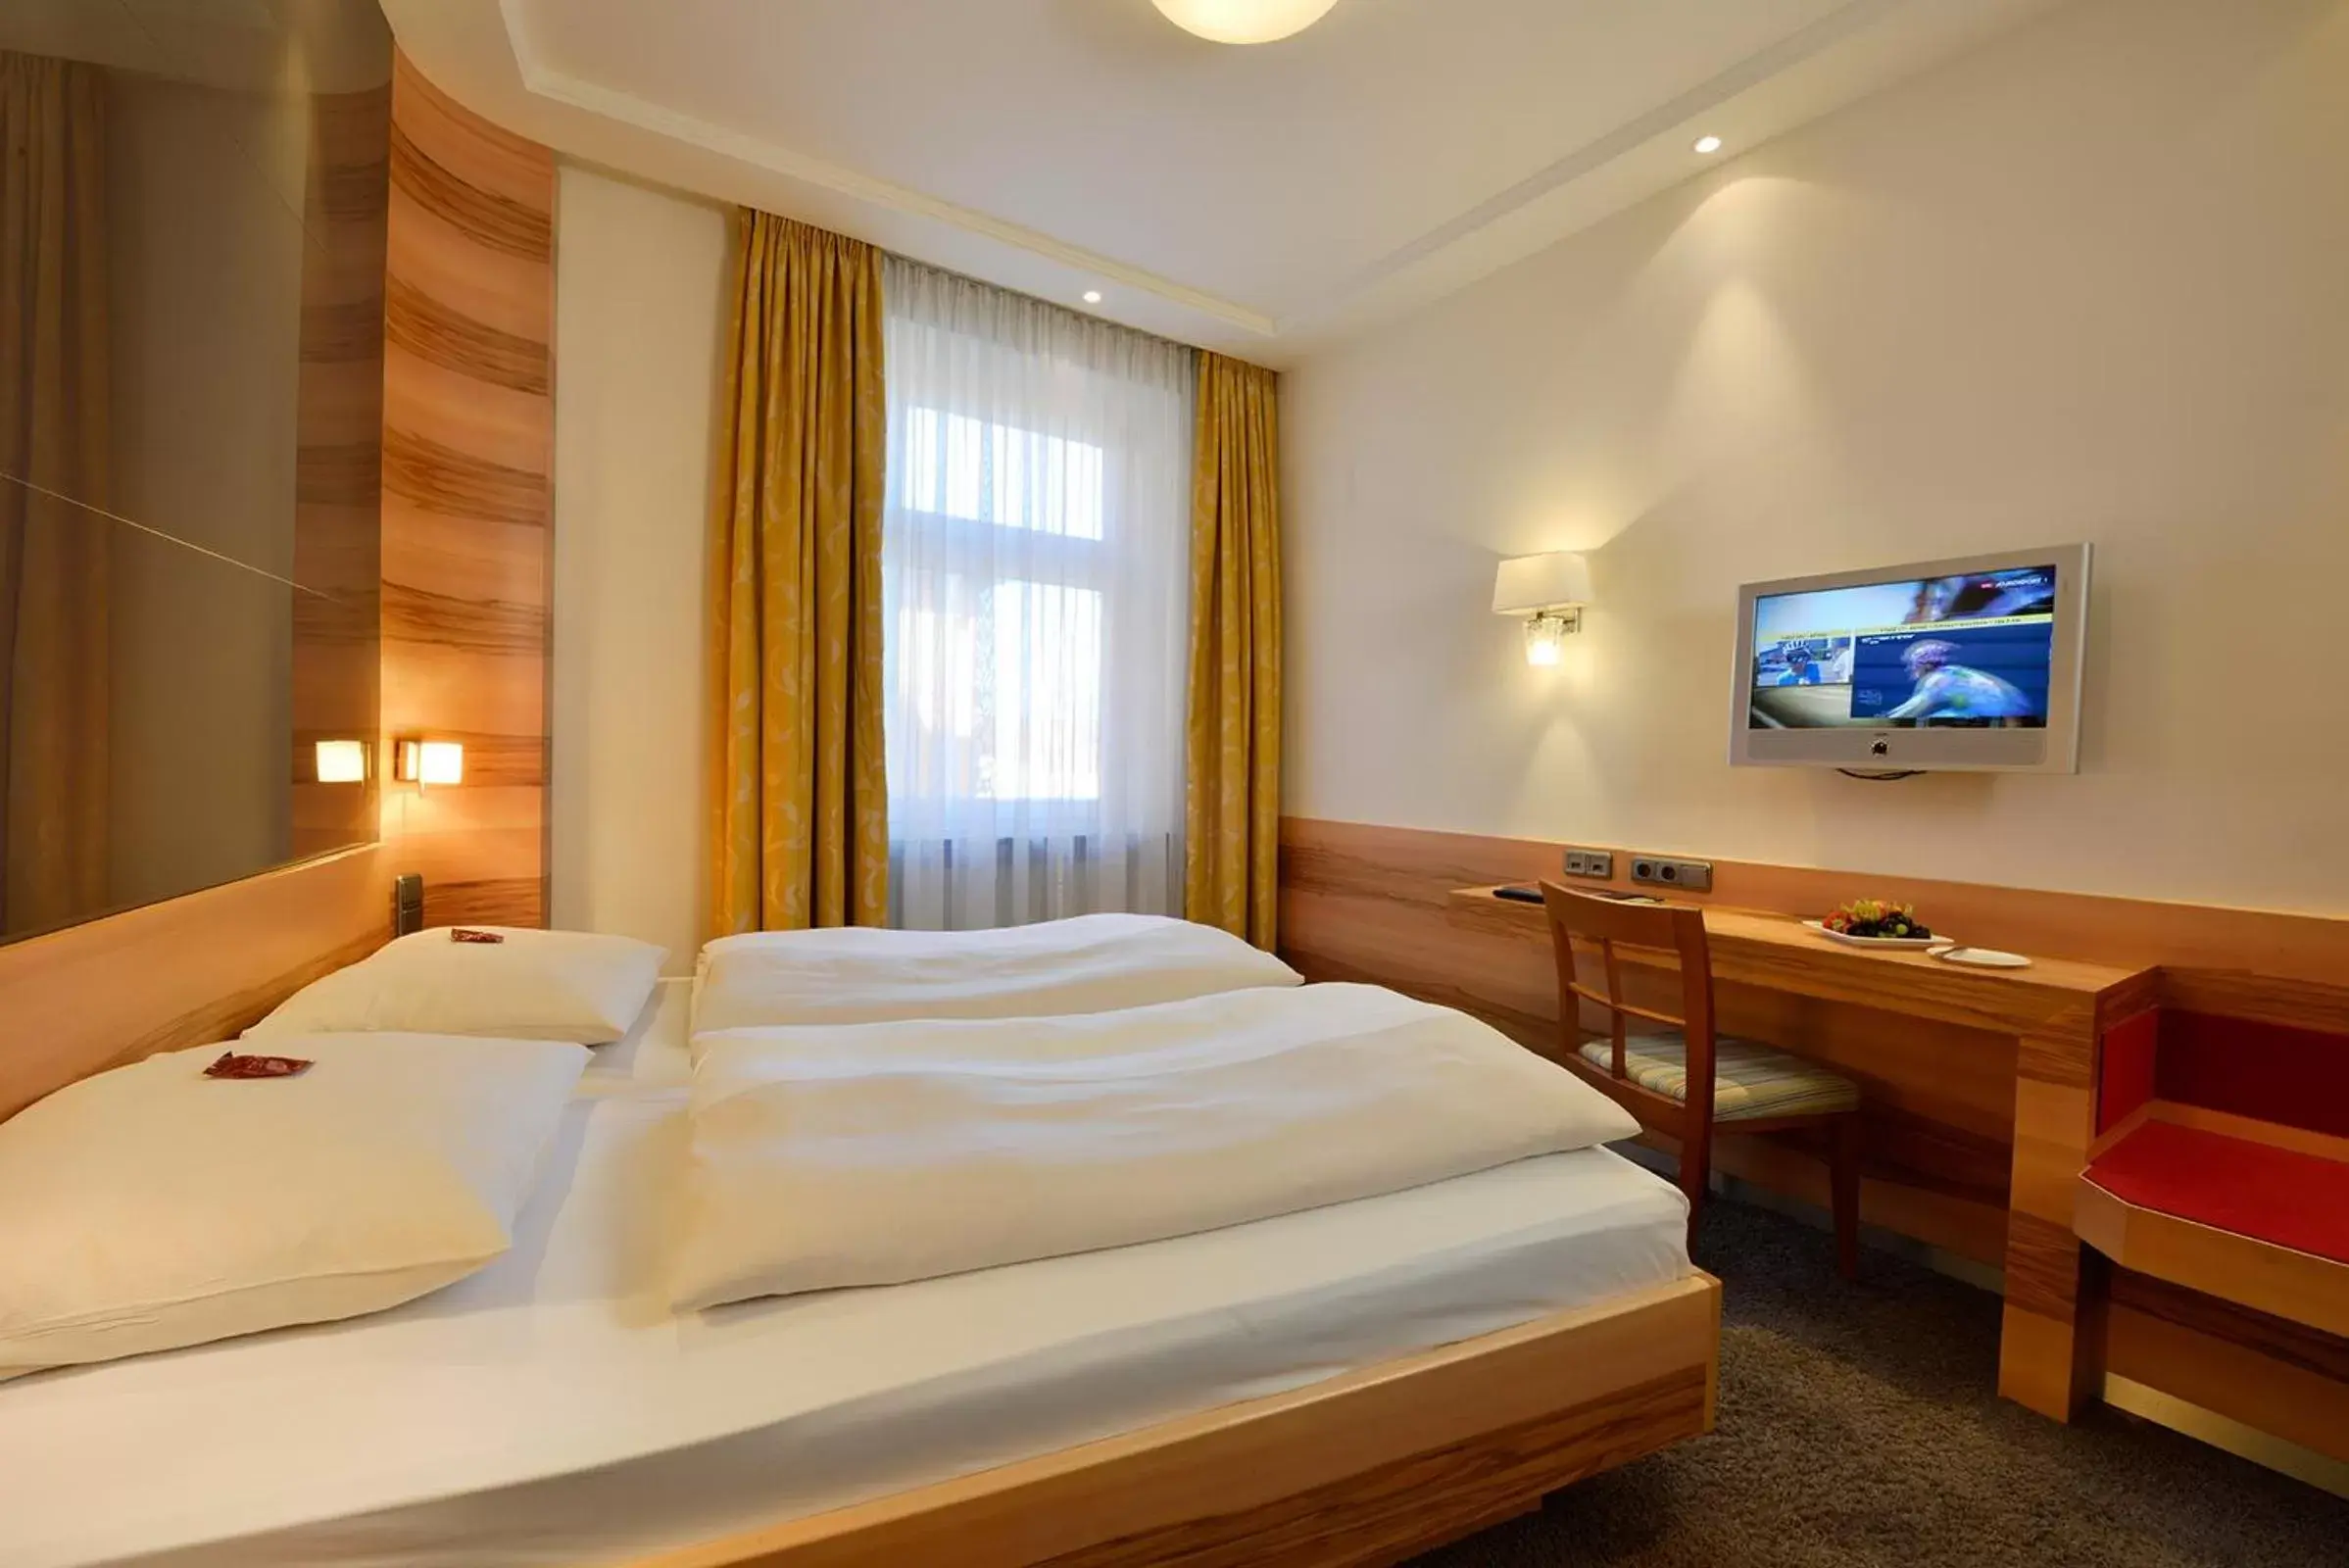 Bed, Room Photo in Hotel Torbräu